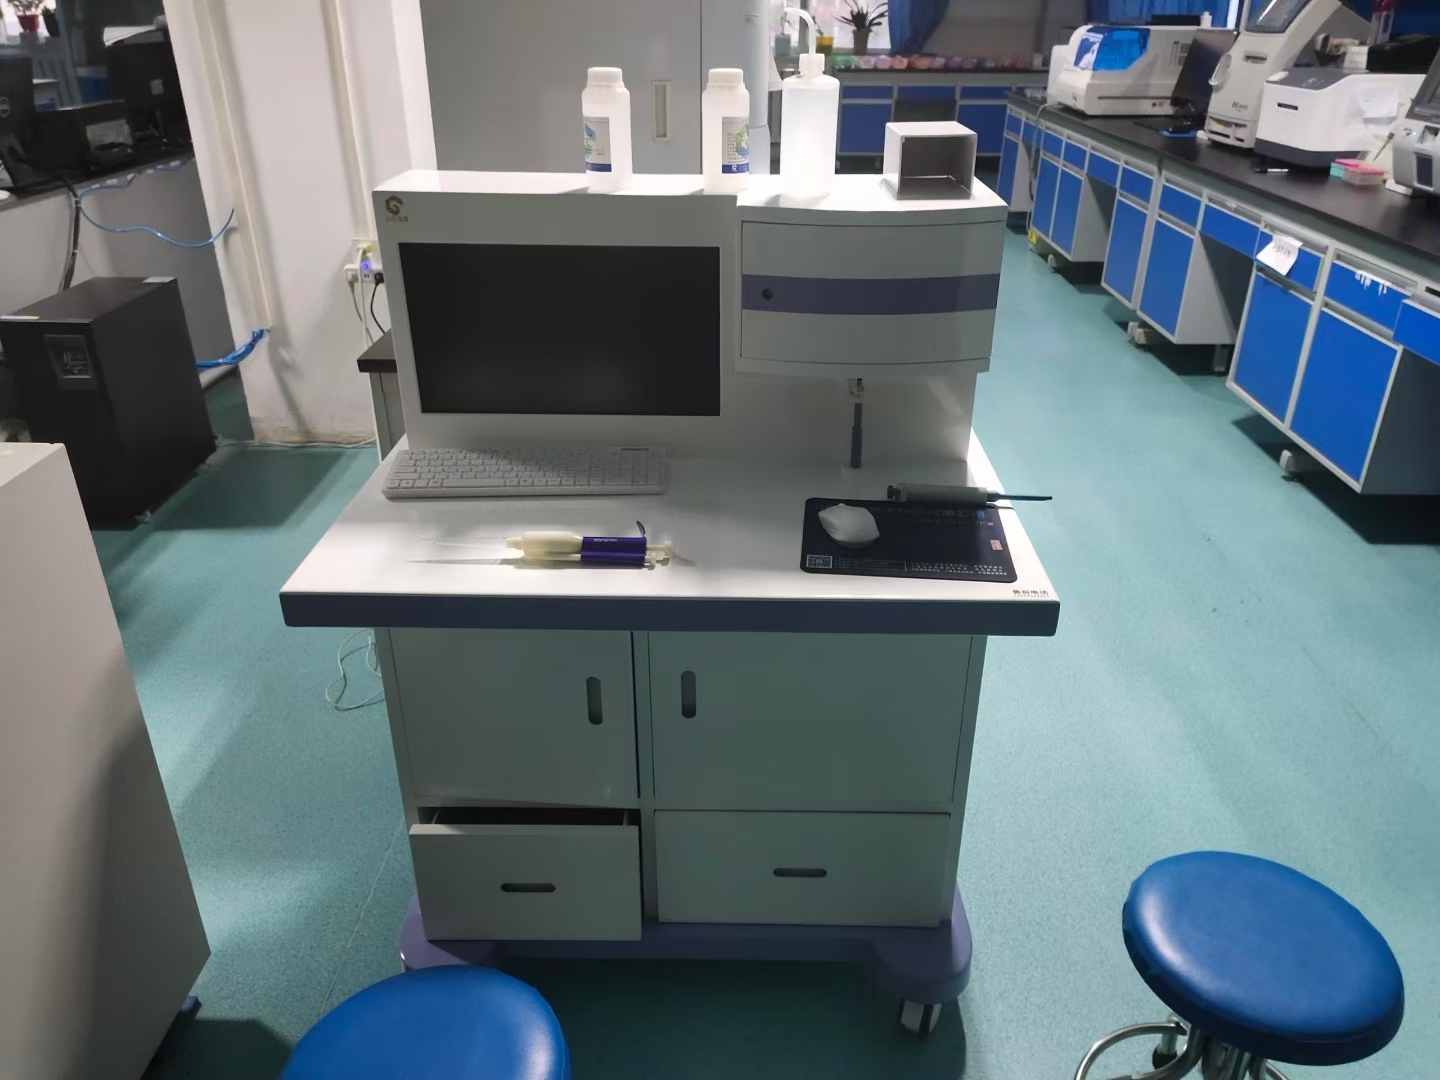 [新设备]医用微量元素分析仪器在陇西中医医院安装培训完成11.17